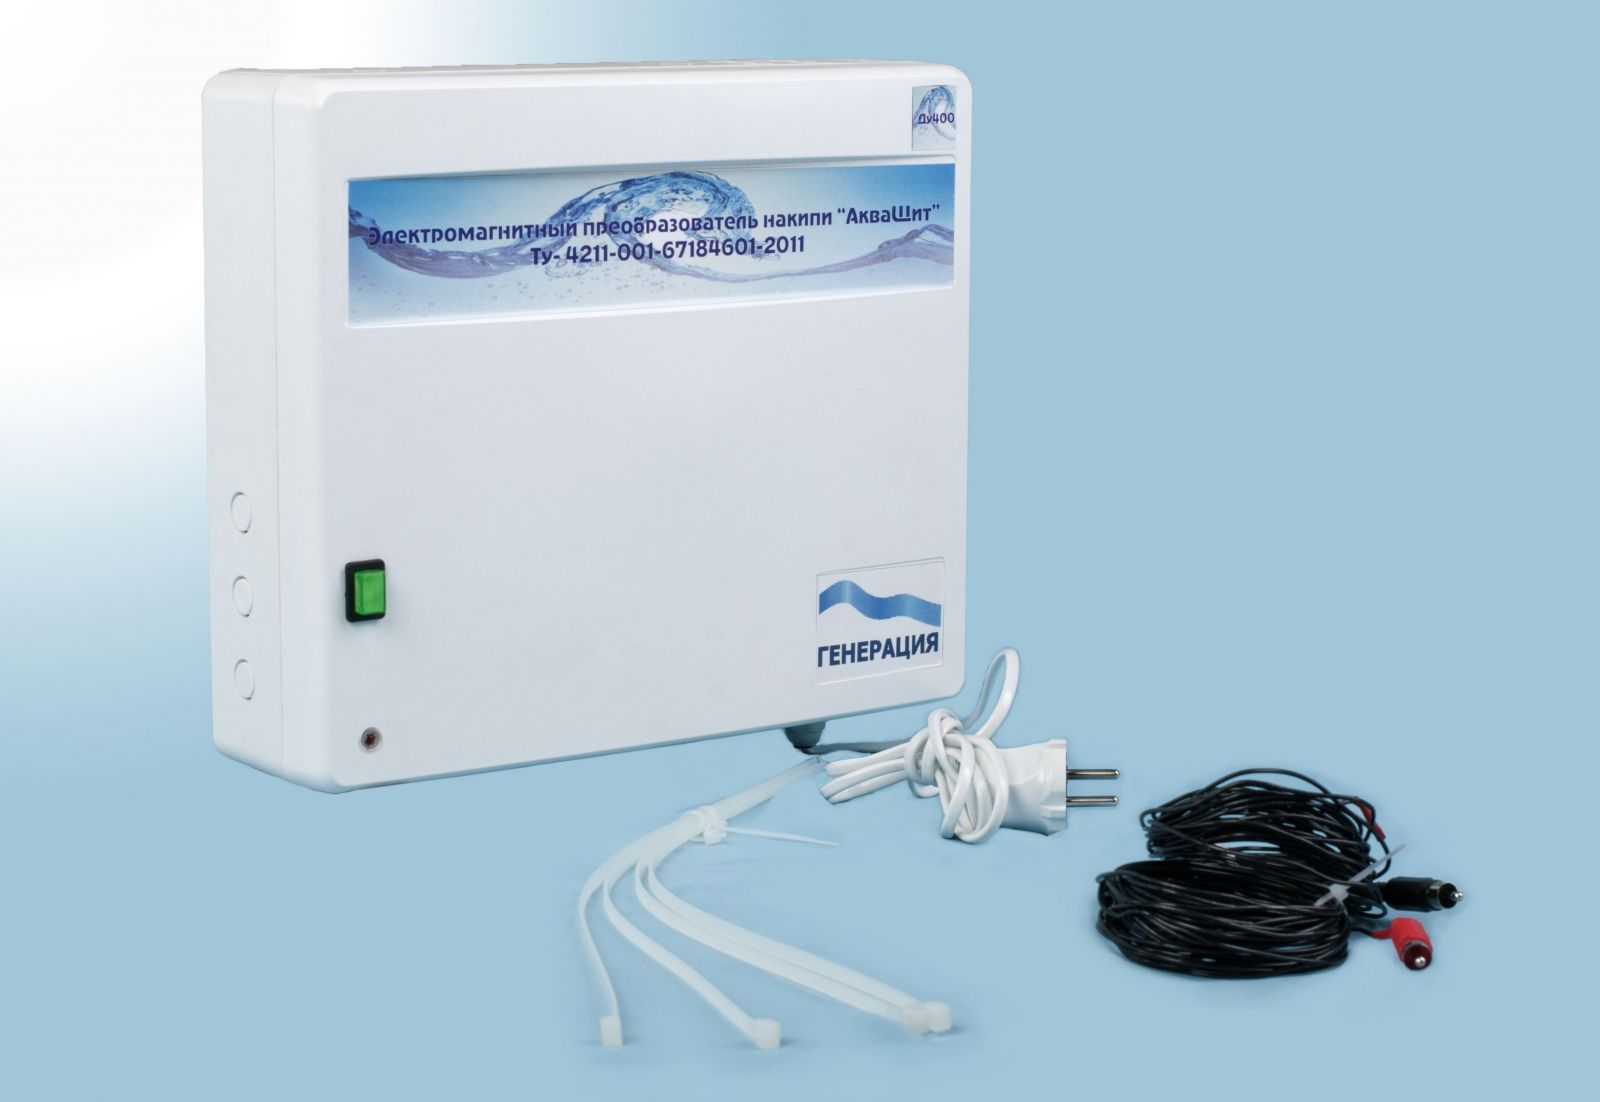 АкваЩит - электромагнитный фильтр для очистки жесткой воды